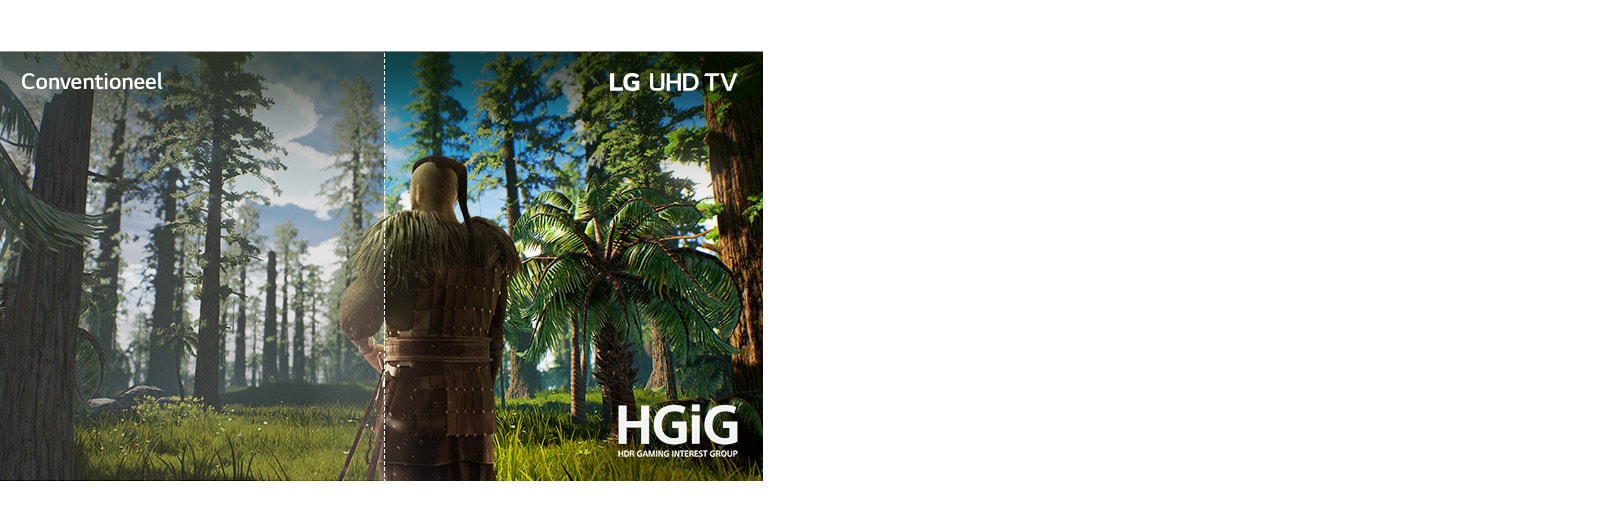 Tv-scherm met een spelscène met de man die in het midden van een bos staat. De helft wordt op een conventioneel scherm getoond met een slechte beeldkwaliteit. De andere helft wordt weergegeven op het LG UHD TV-scherm met een heldere, levendige beeldkwaliteit.